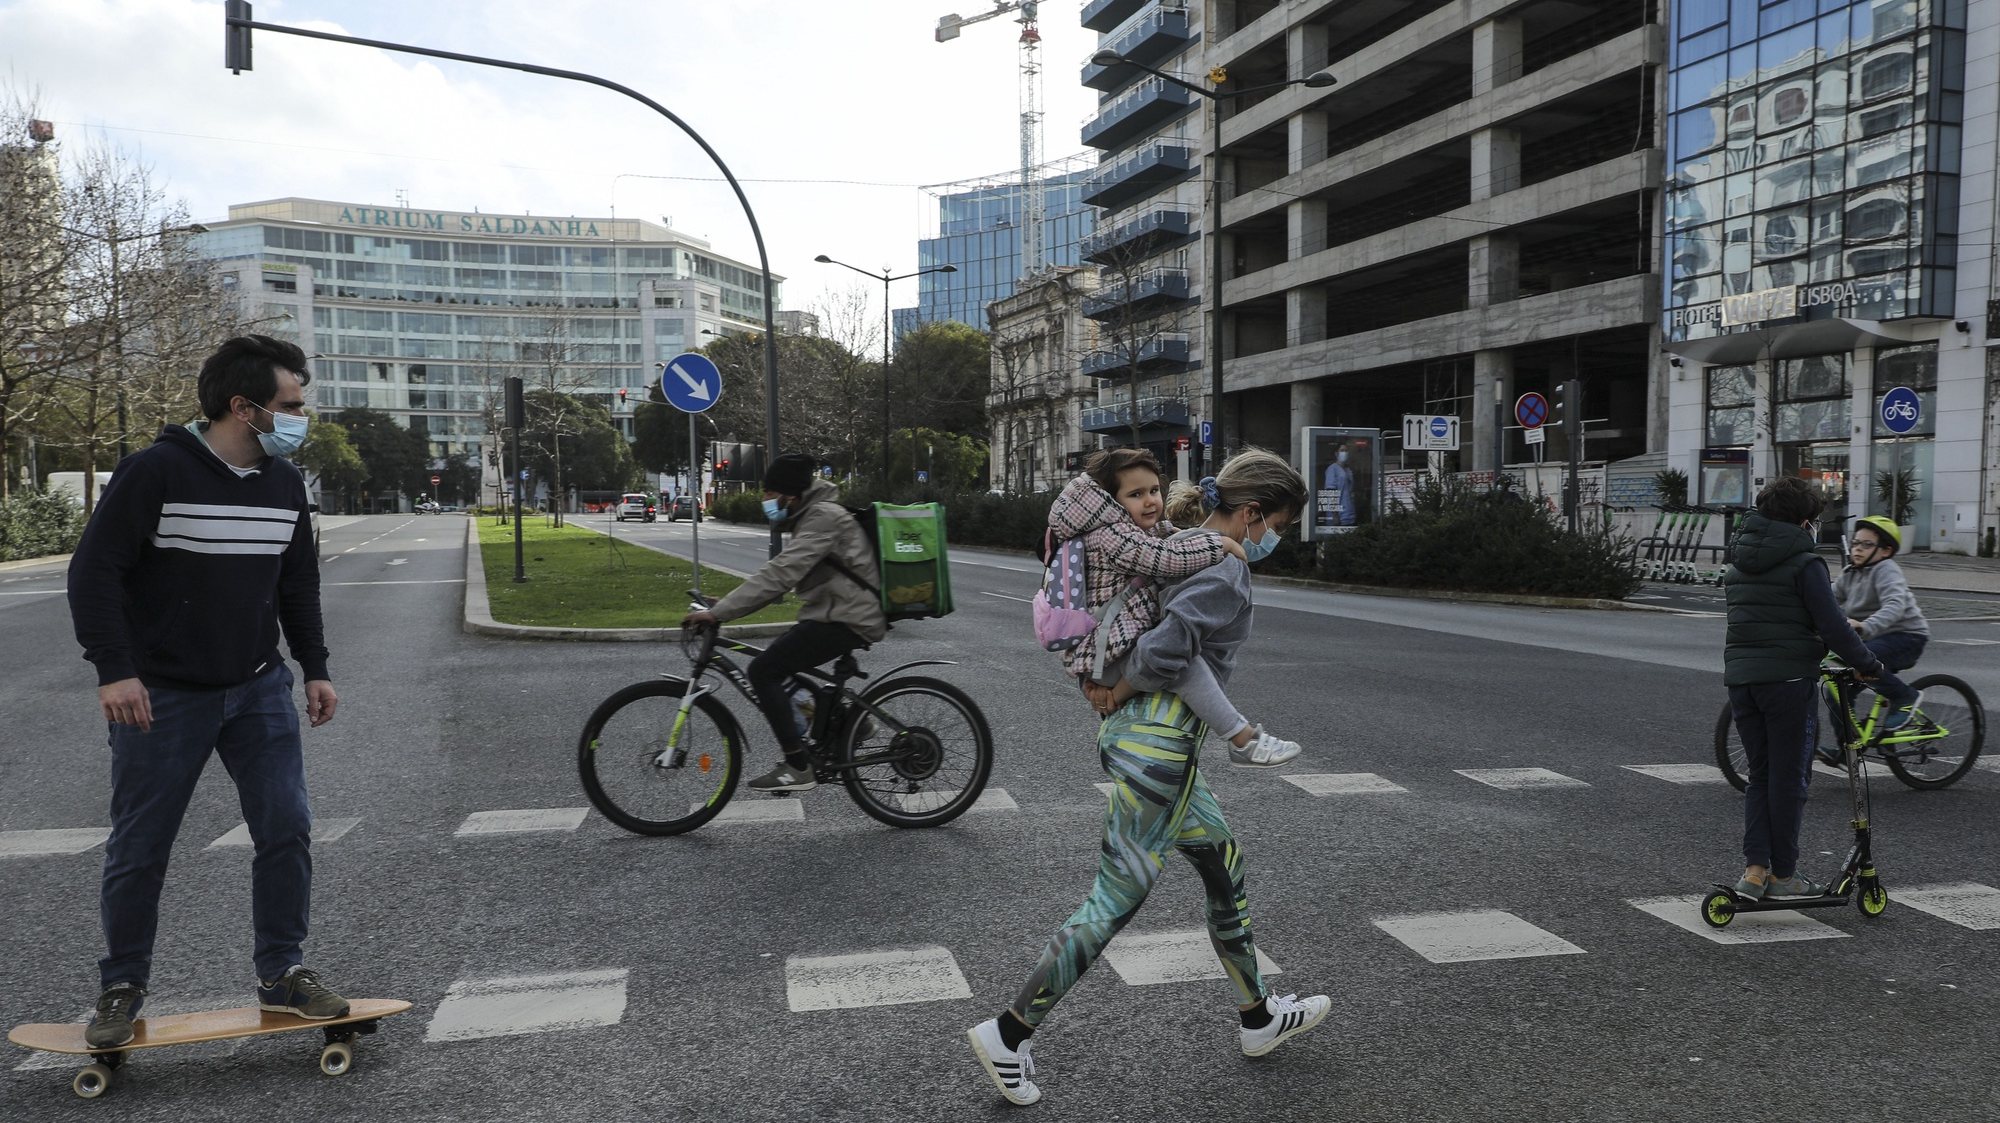 Pessoas passeiam de bicicleta, trotinete a pé e de skate junto ao Saldanha em Lisboa, durante período com medidas de restrição impostas pelo novo confinamento, na sequência da pandemia de Covid-19, 30 de janeiro de 2021. MIGUEL A. LOPES/LUSA